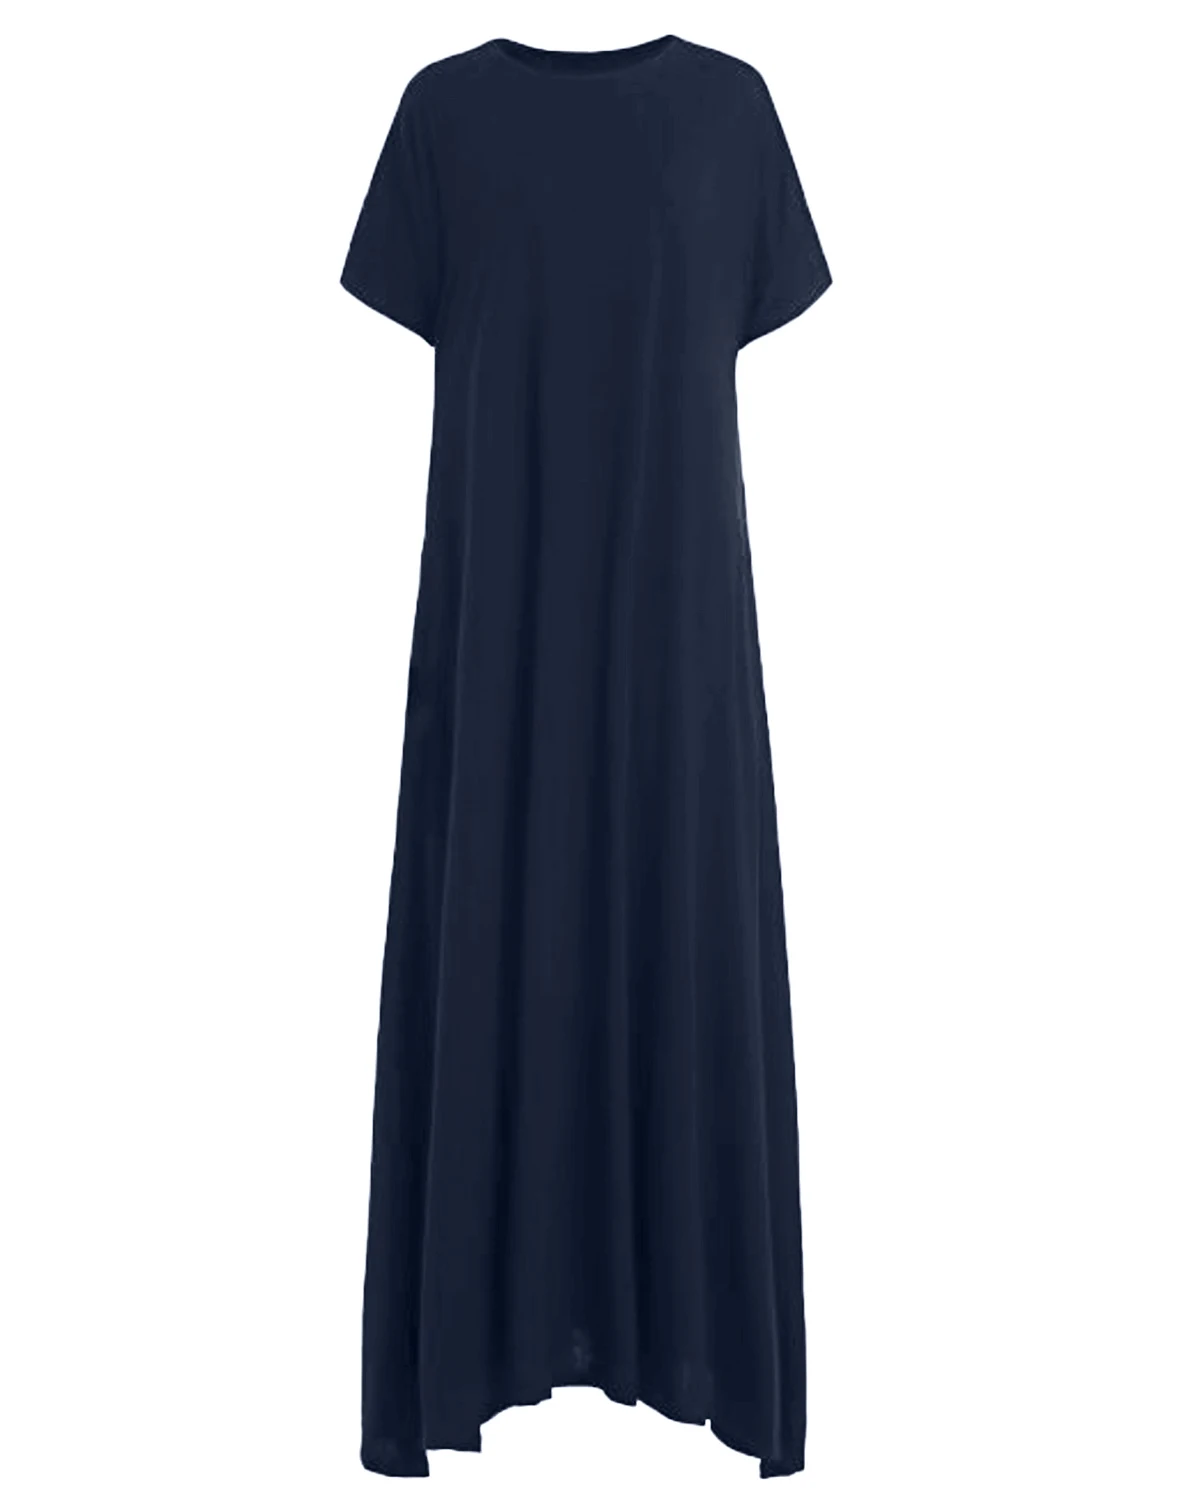 Zanzea размера плюс Макси платье женское летнее с o-образным вырезом длинное платье женское с коротким рукавом свободное одноцветное вечернее детское летнее платье Vestidos